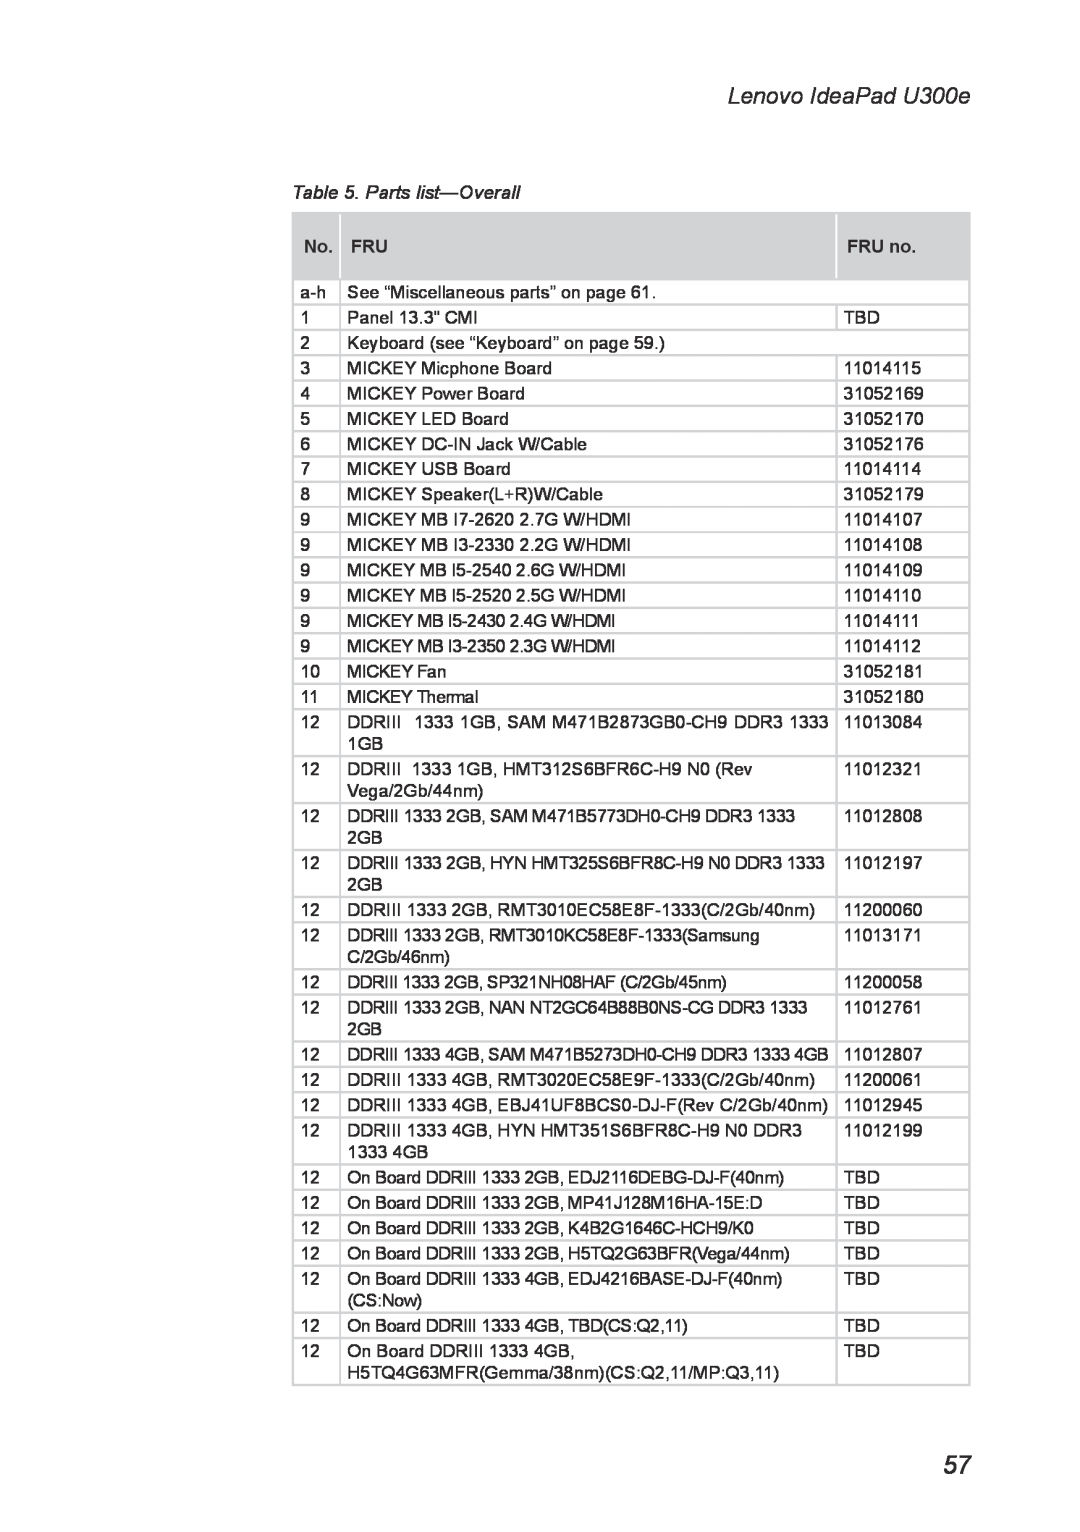 Lenovo U300E manual Parts list-Overall, Lenovo IdeaPad U300e, No. FRU, FRU no 